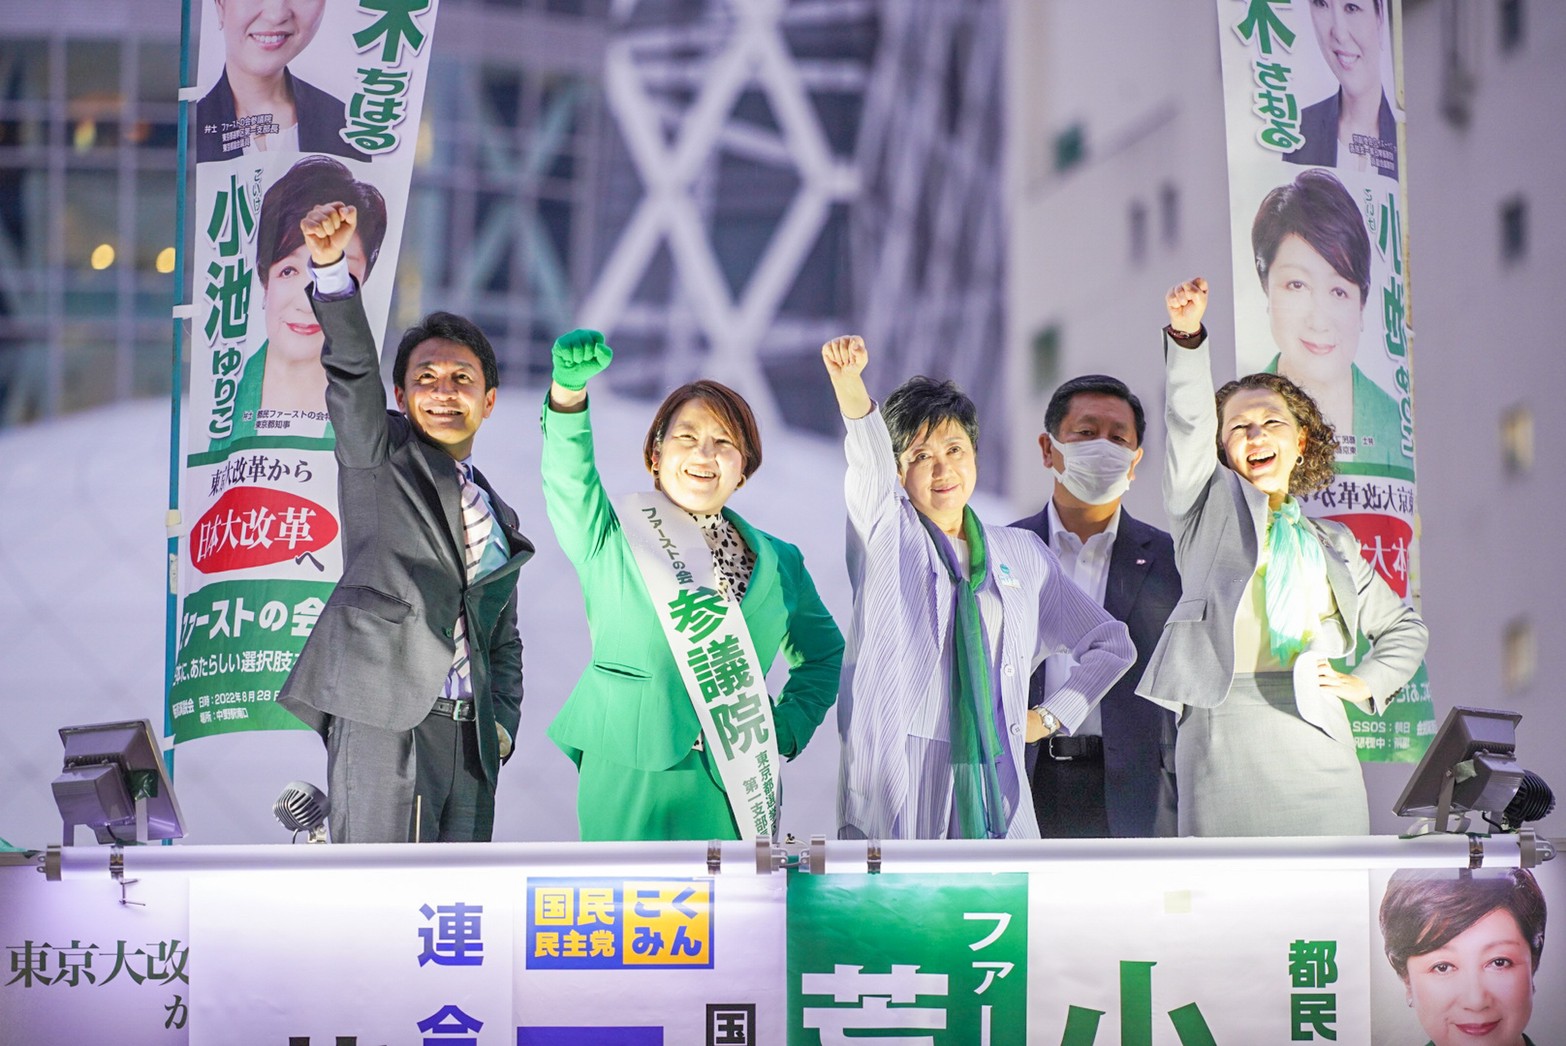 【東京】「日本の経済政策をどうしても変えていきたい」玉木代表が荒木ファーストの会代表の街頭演説会に参加